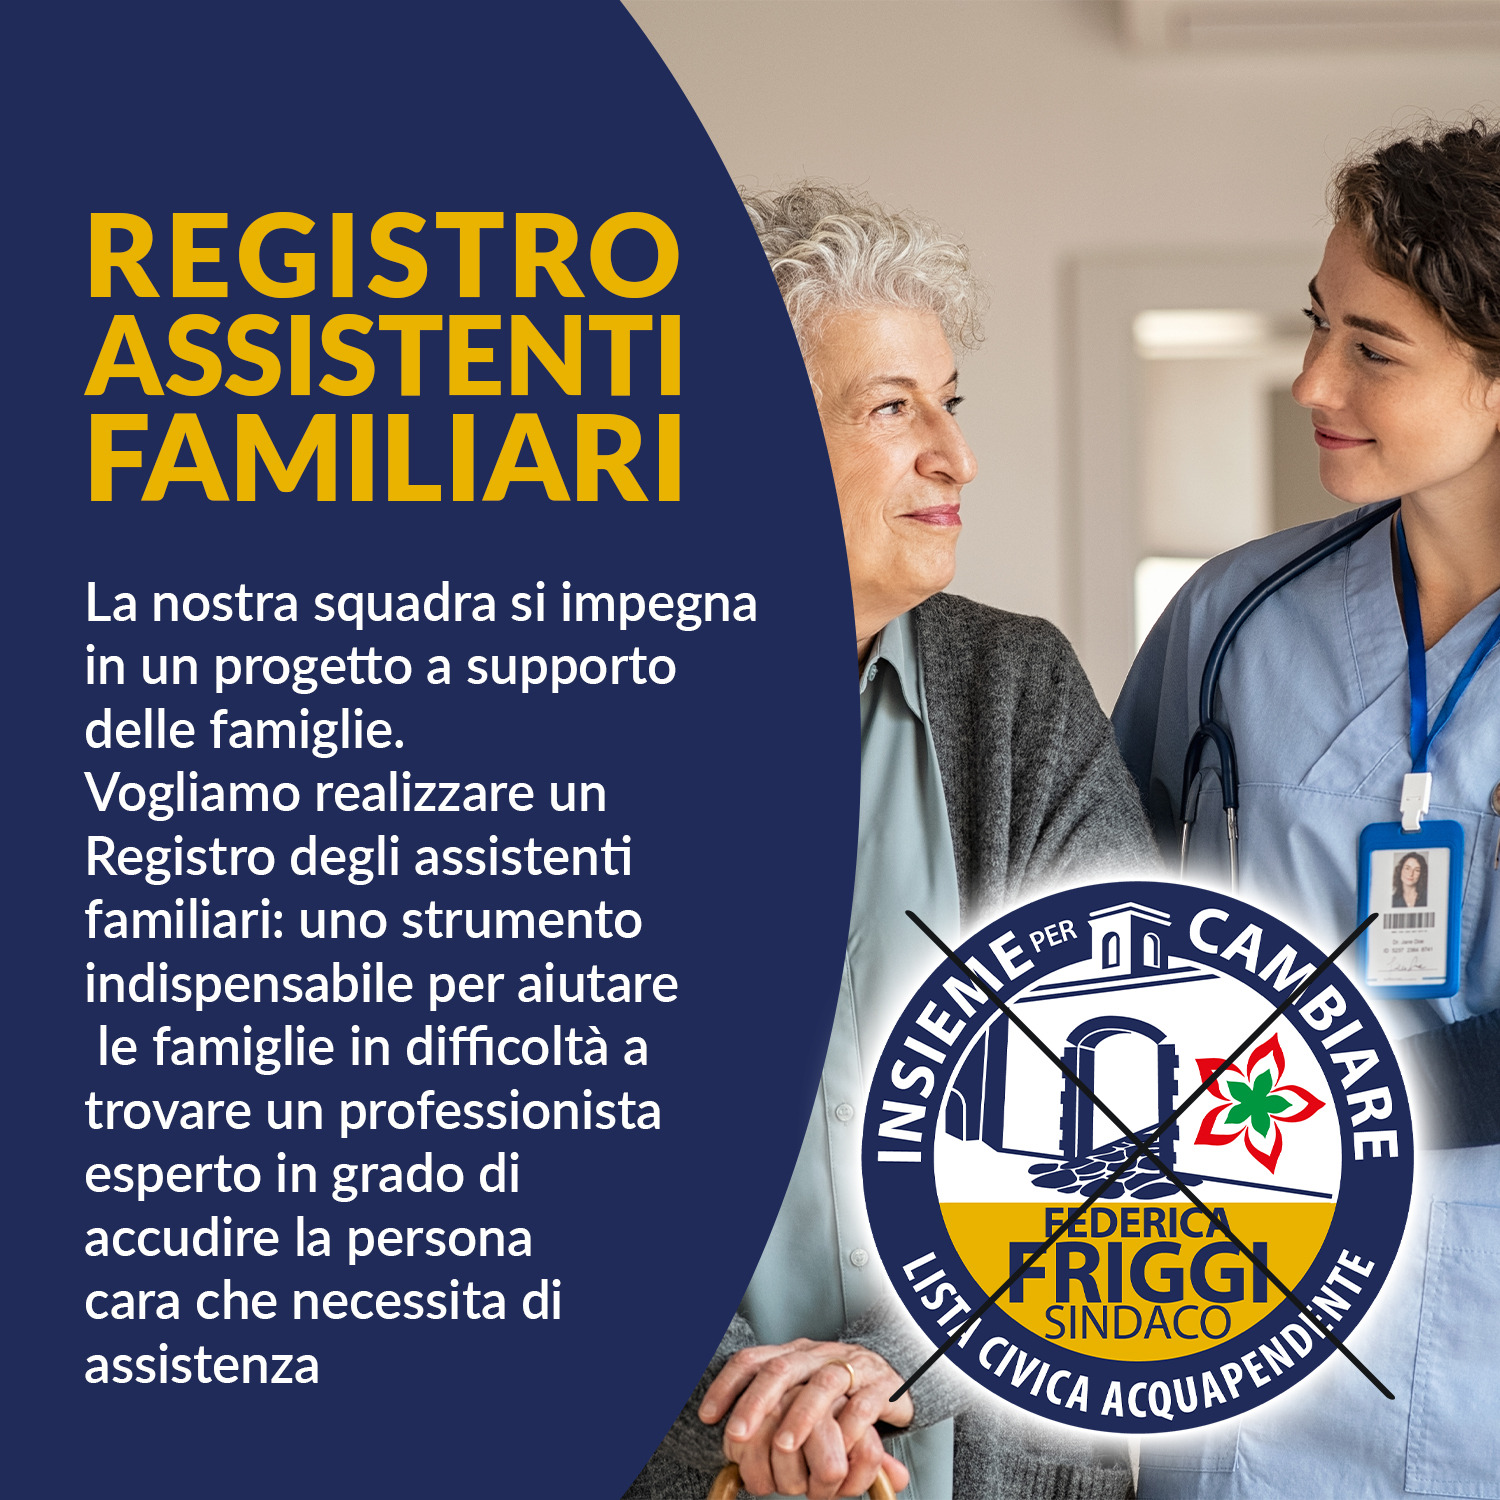 Un Registro degli assistenti familiari a supporto delle persone con difficoltà